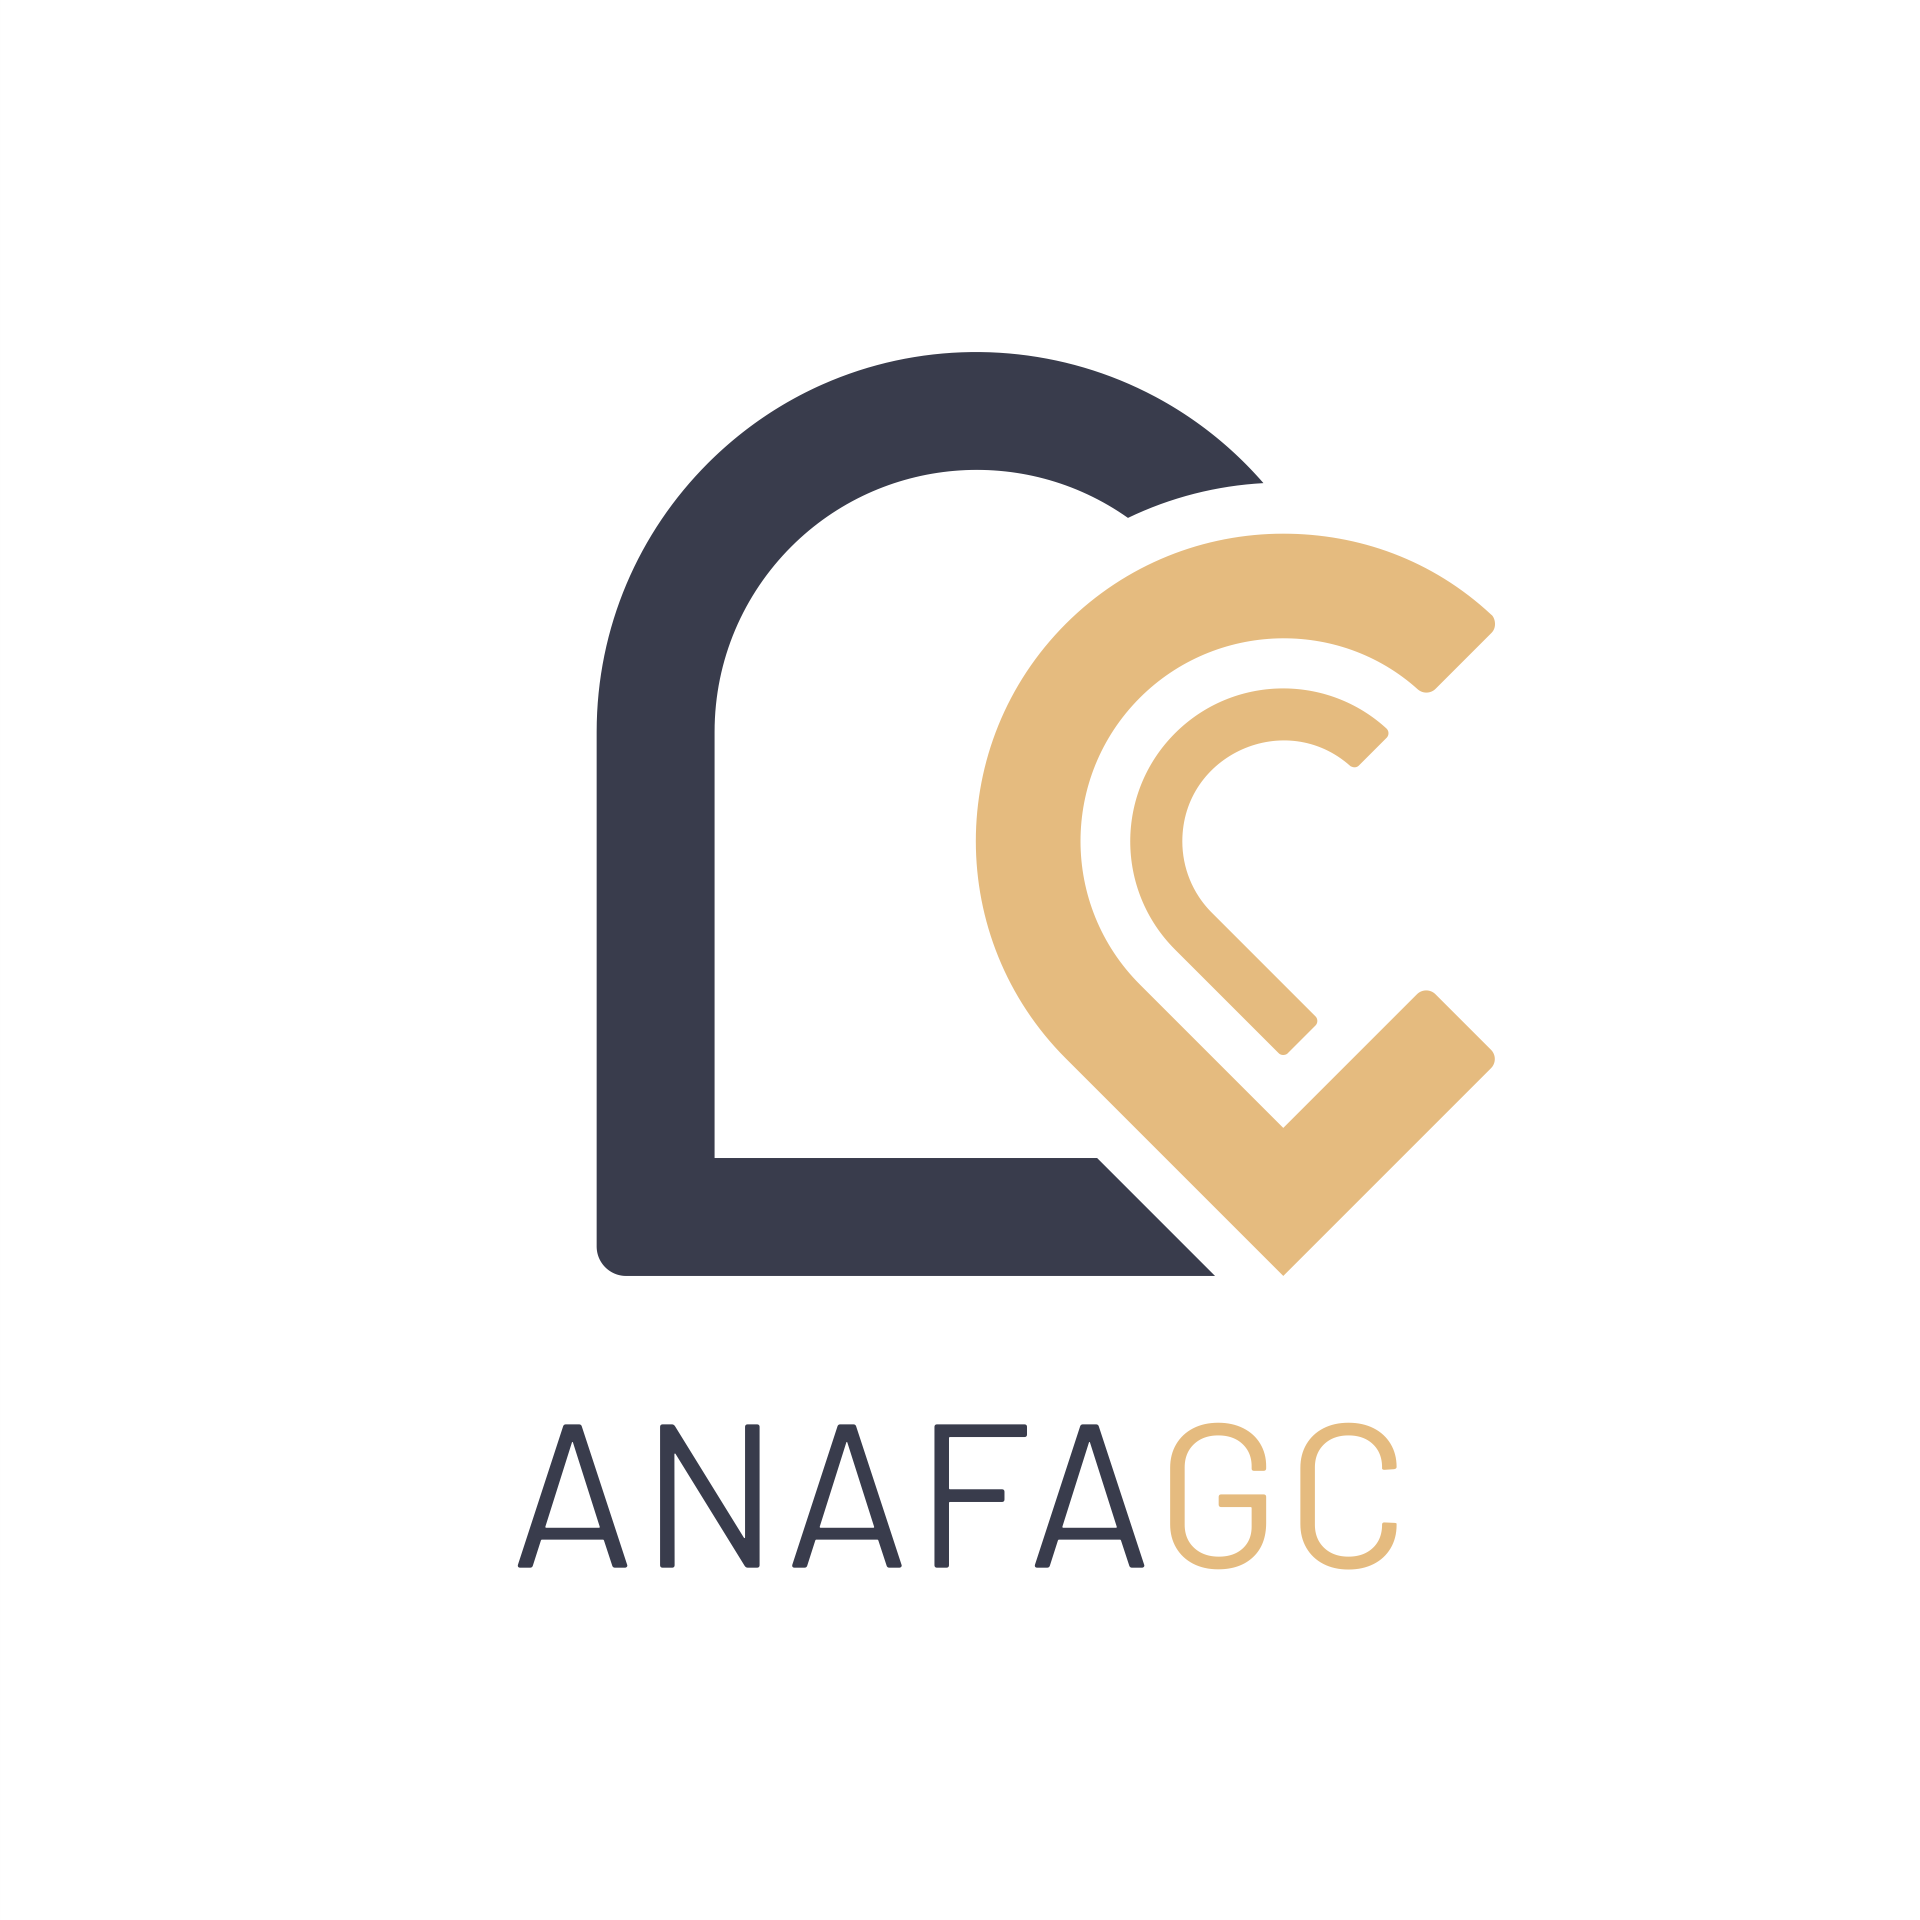 ANAFAGC est une association de gestion et de comptabilité (AGC)